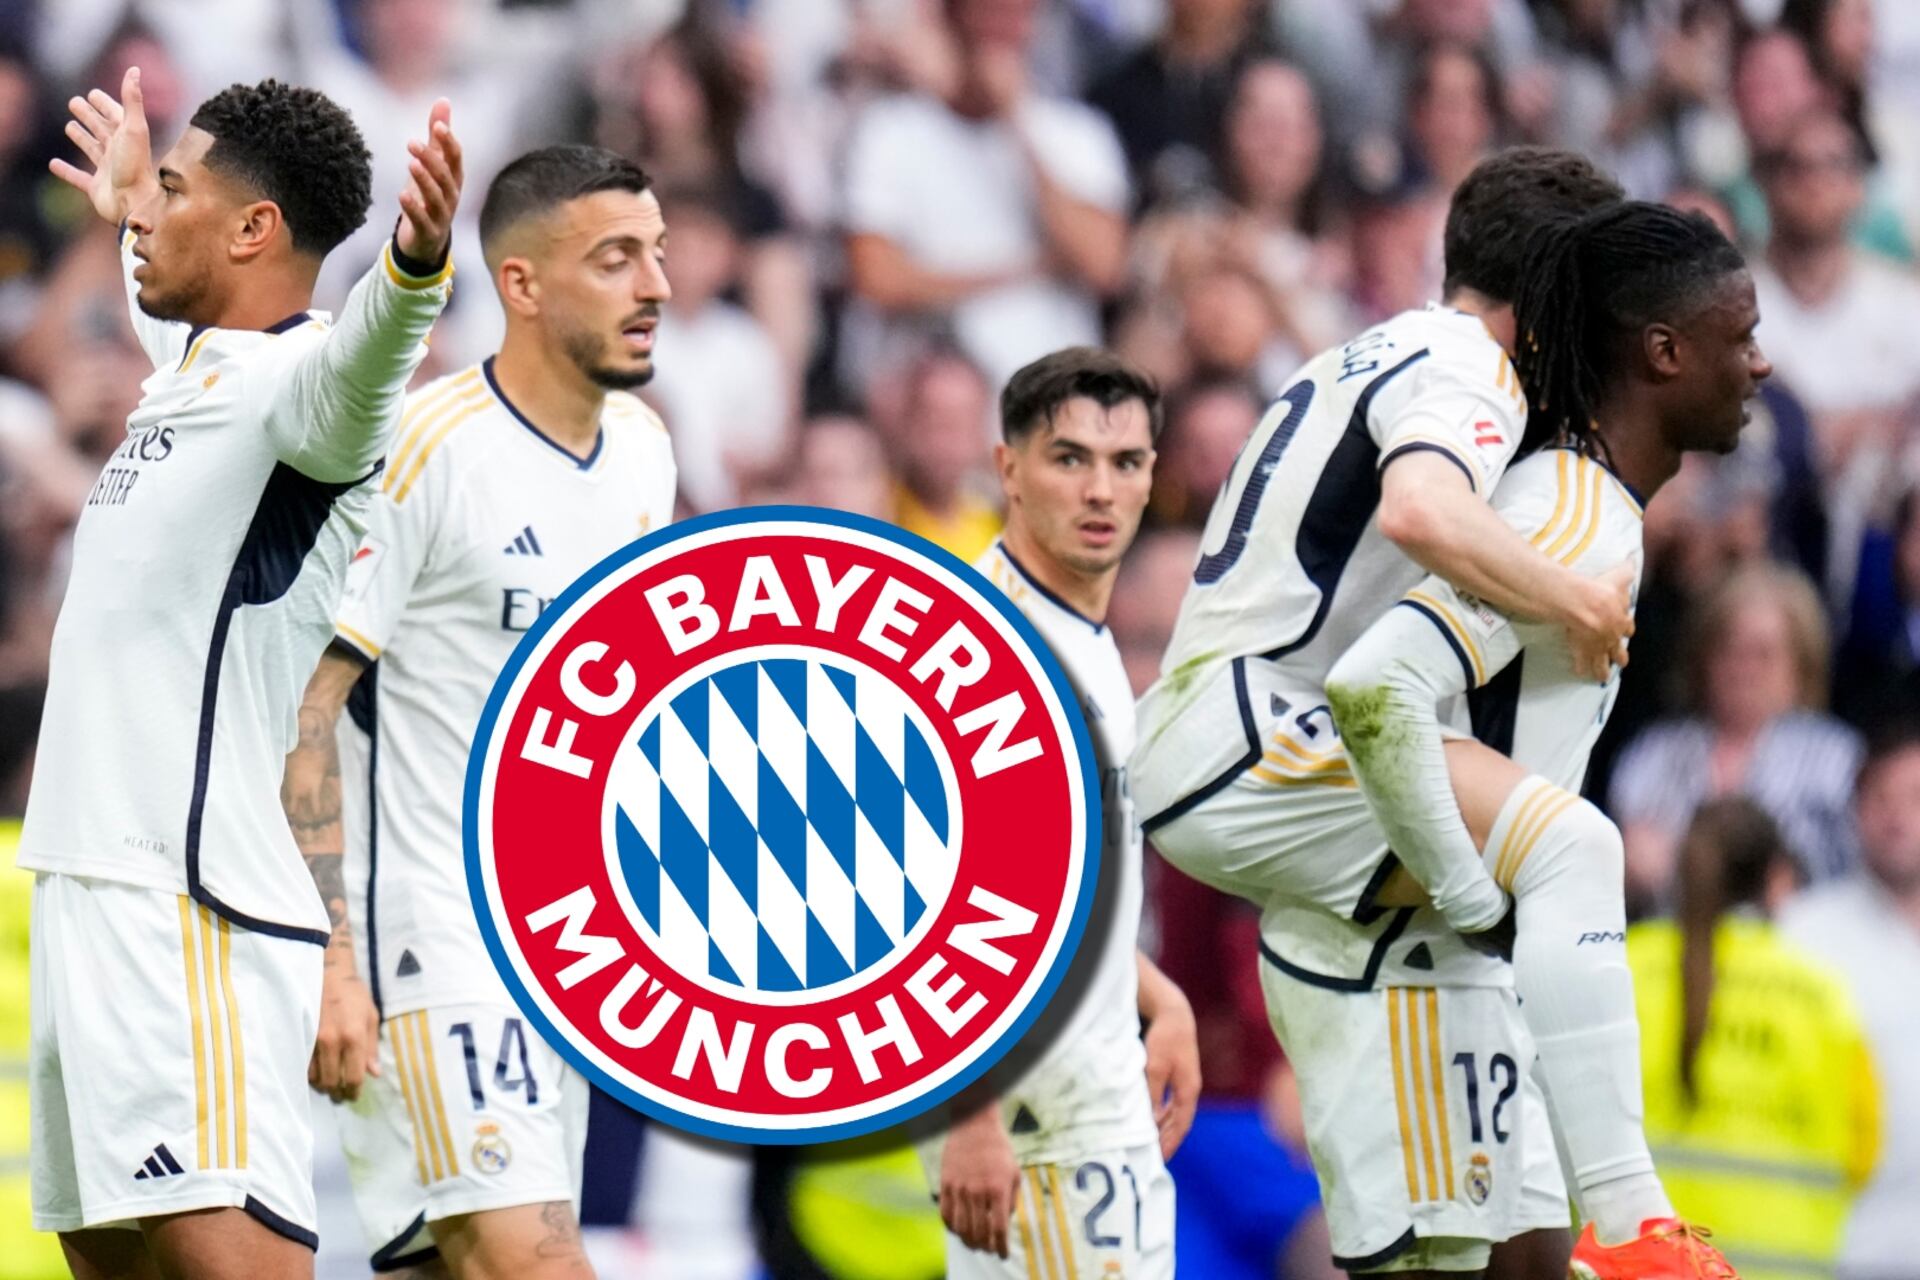 El Madrid los eliminó de Champions y ahora el Bayern quiere robarles un fichaje estrella